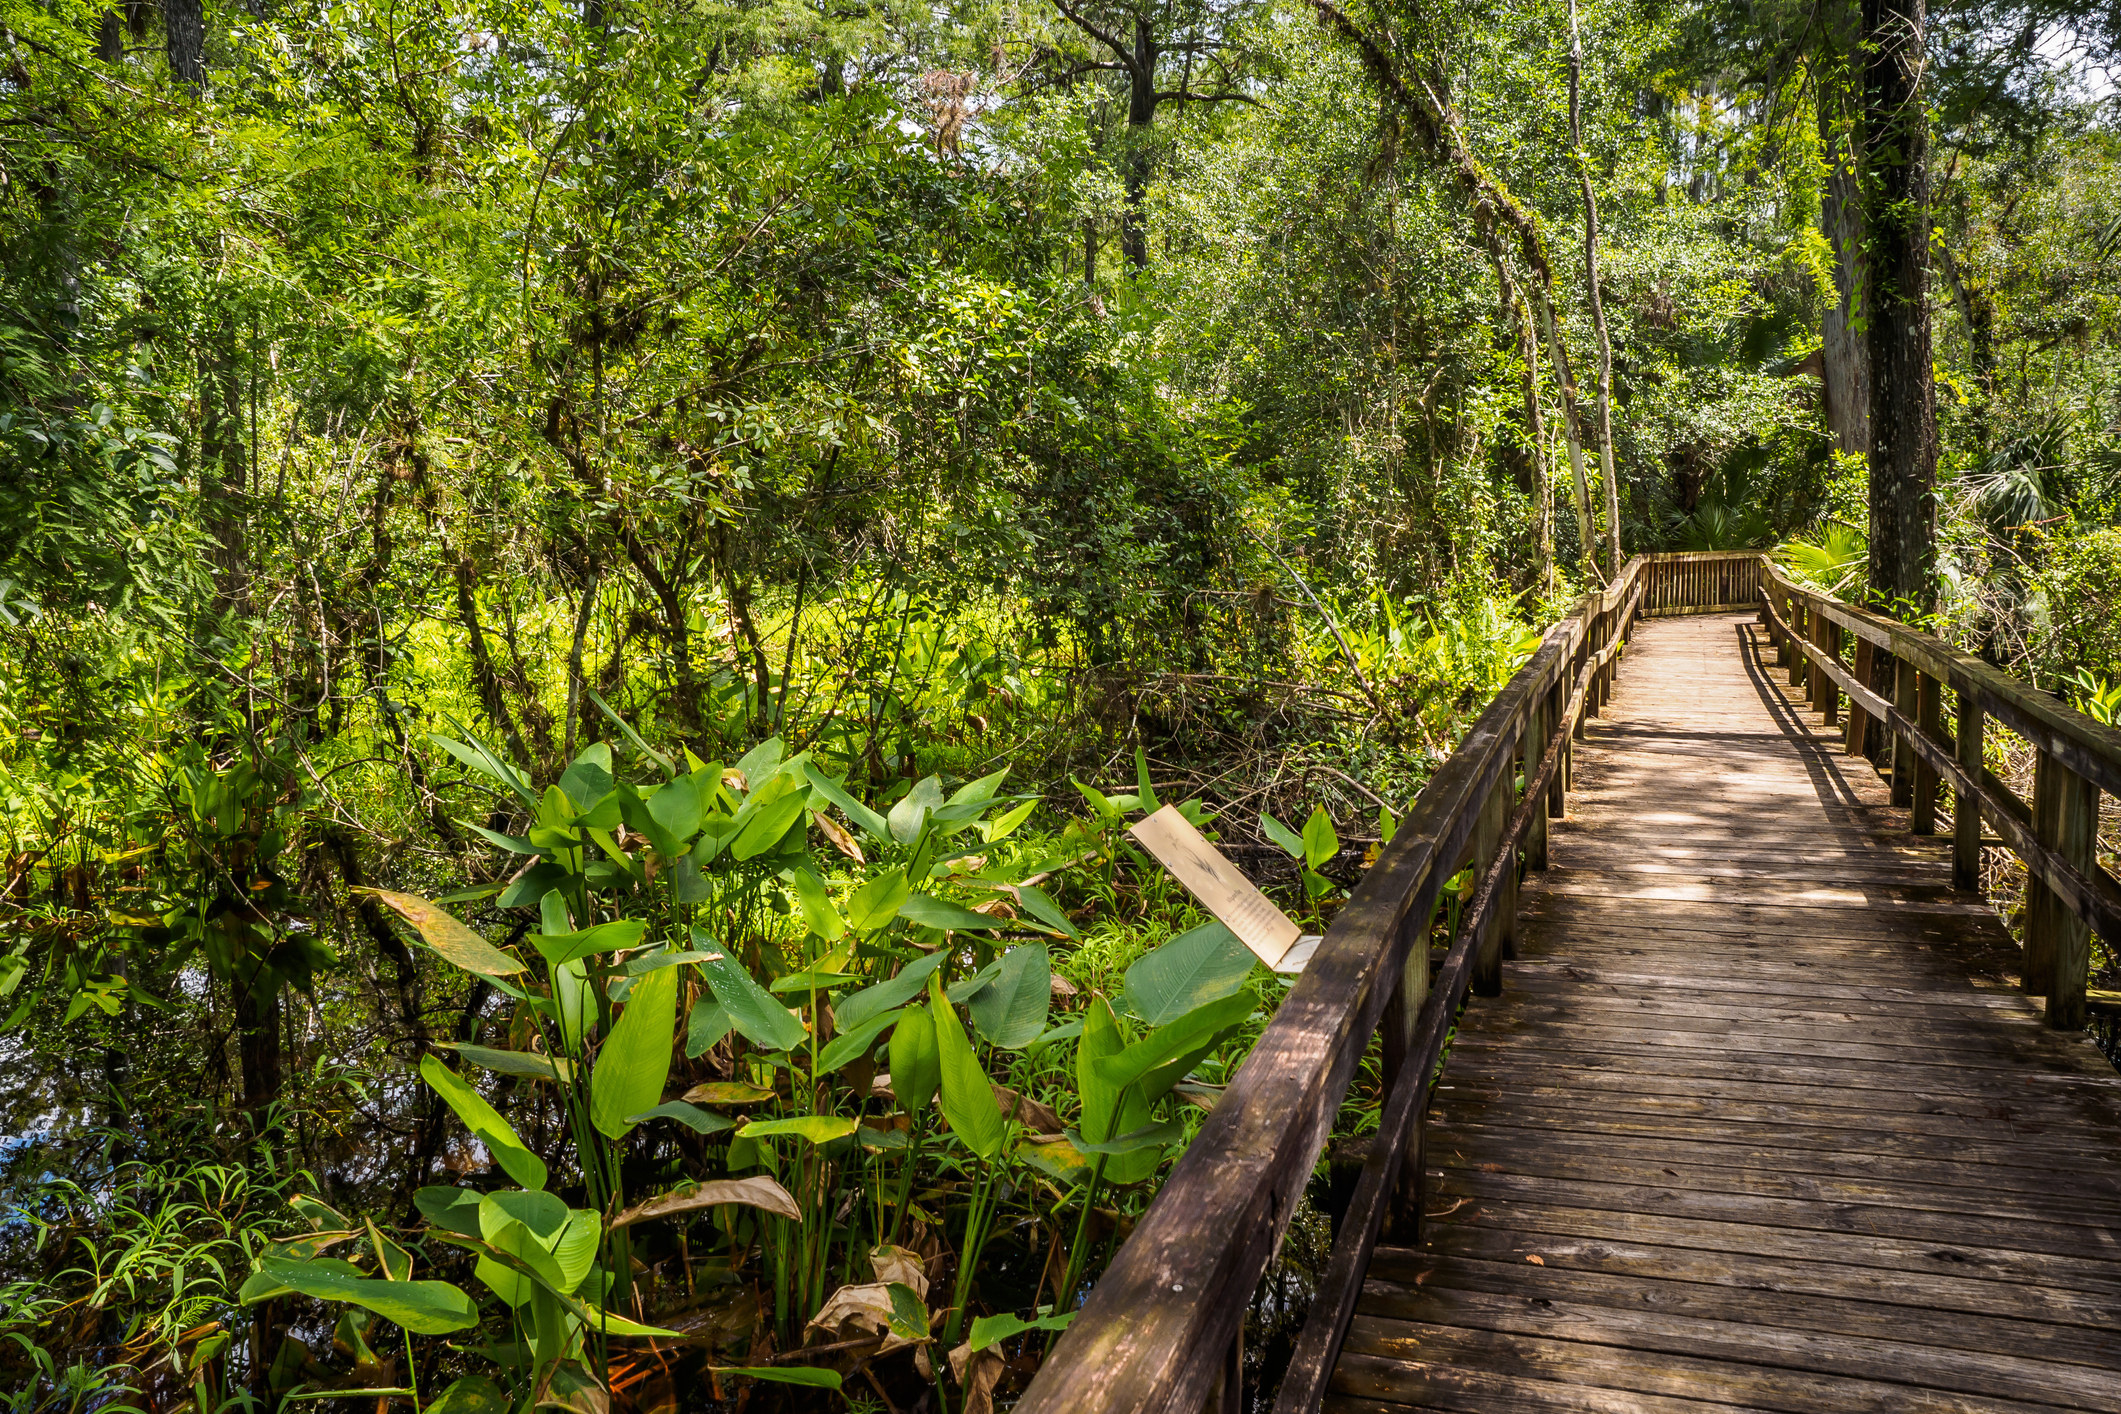 A wooden boardwalk winds through lush vegetation